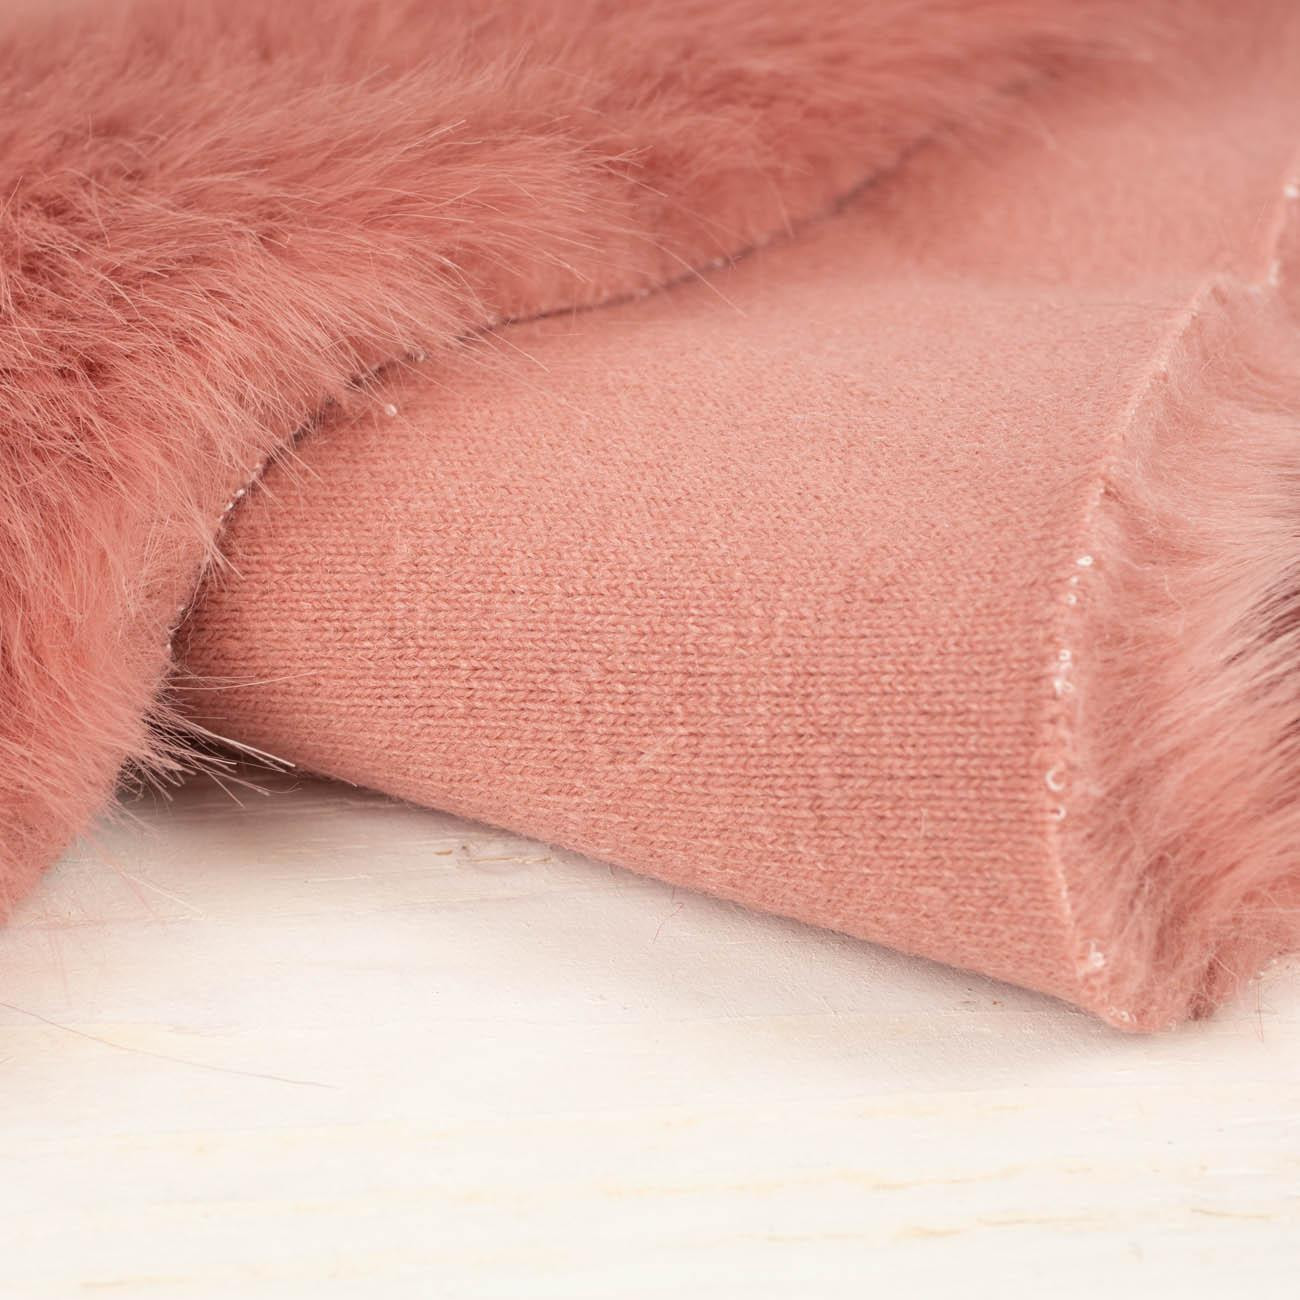 Pink - Faux fur trim 15cm x 95cm